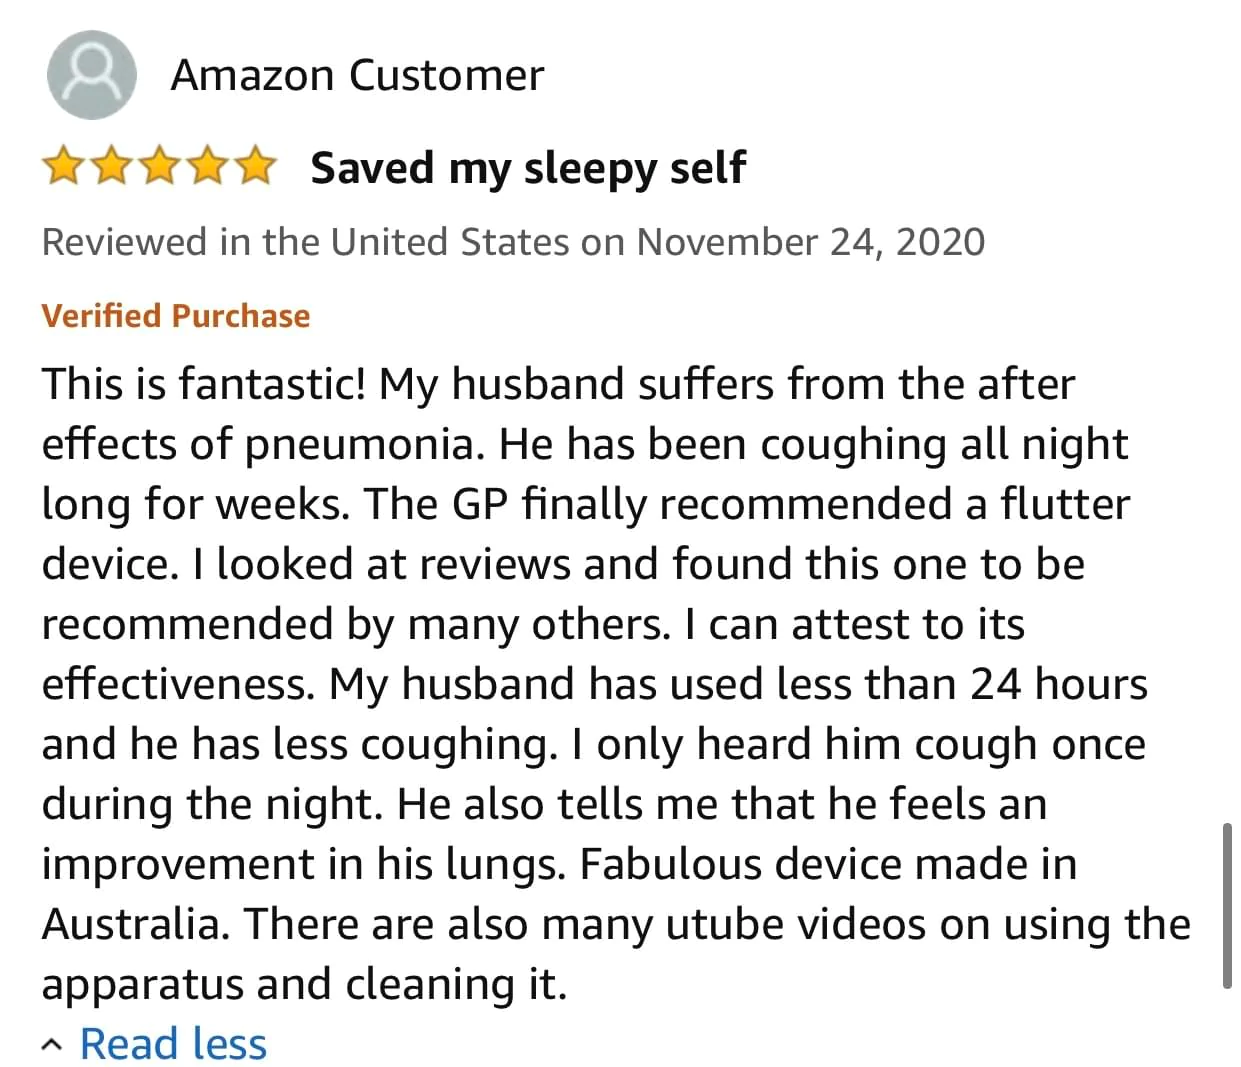 Amazon Customer saved my sleepy self